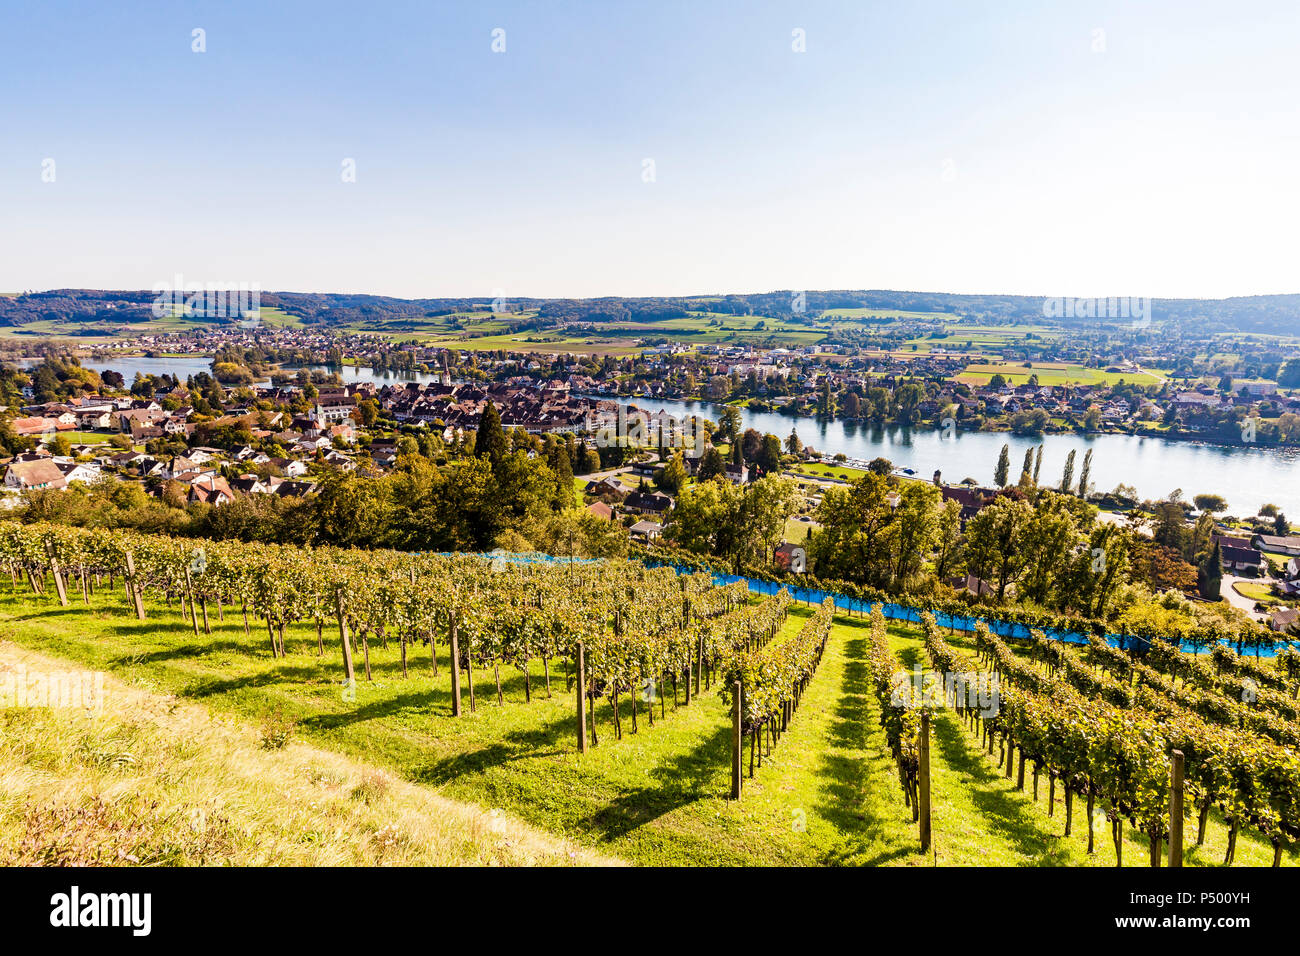 La Suisse, canton de Schaffhouse, Stein am Rhein, le lac de Constance, le Rhin, paysage urbain Banque D'Images